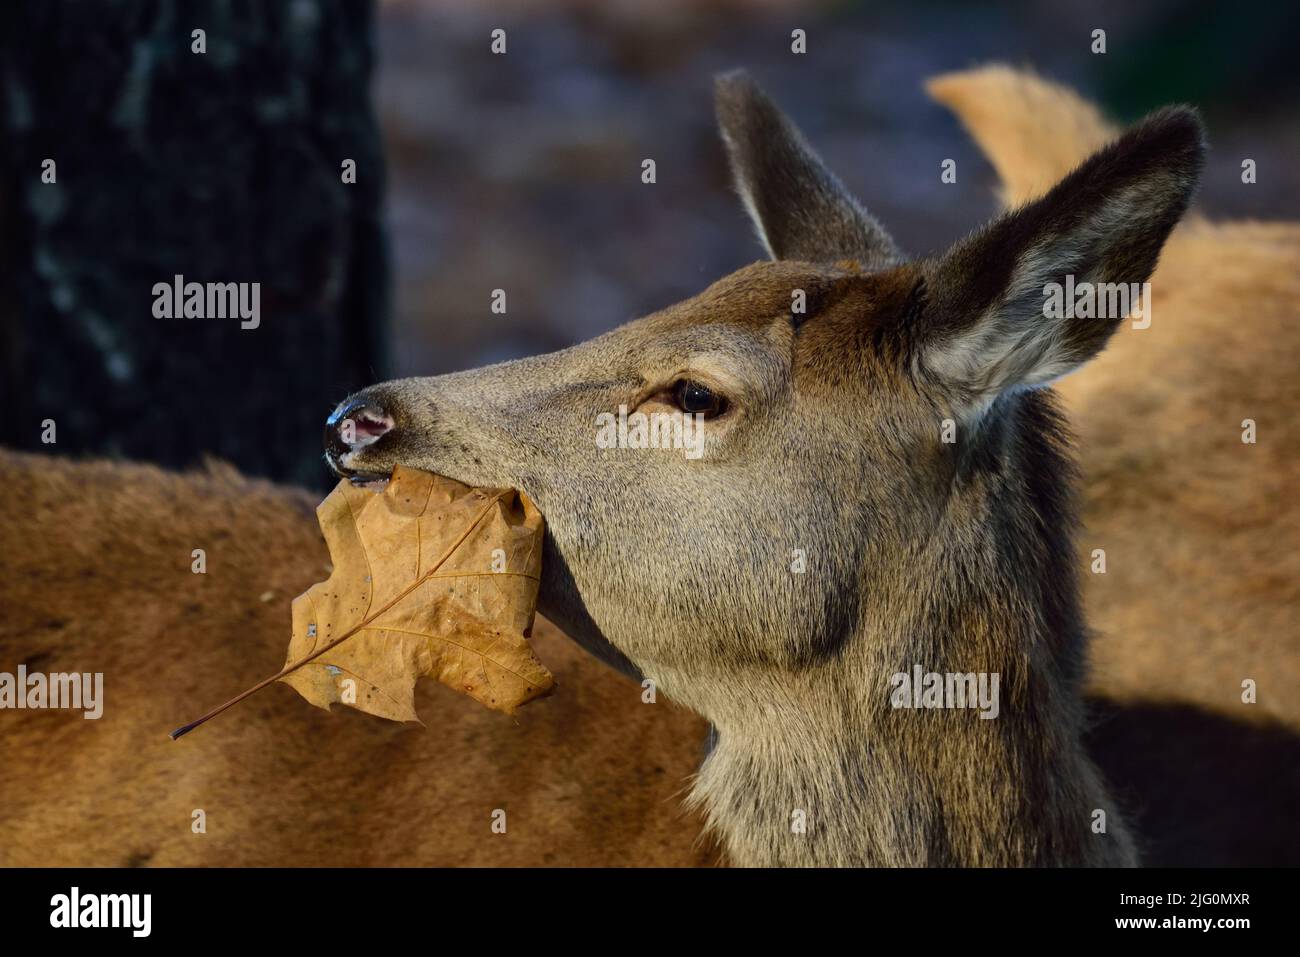 Ciervo rojo animal joven comiendo una hoja vieja en otoño, retrato de cabeza, Renania del Norte westfalia, (cervus elaphus), alemania Foto de stock